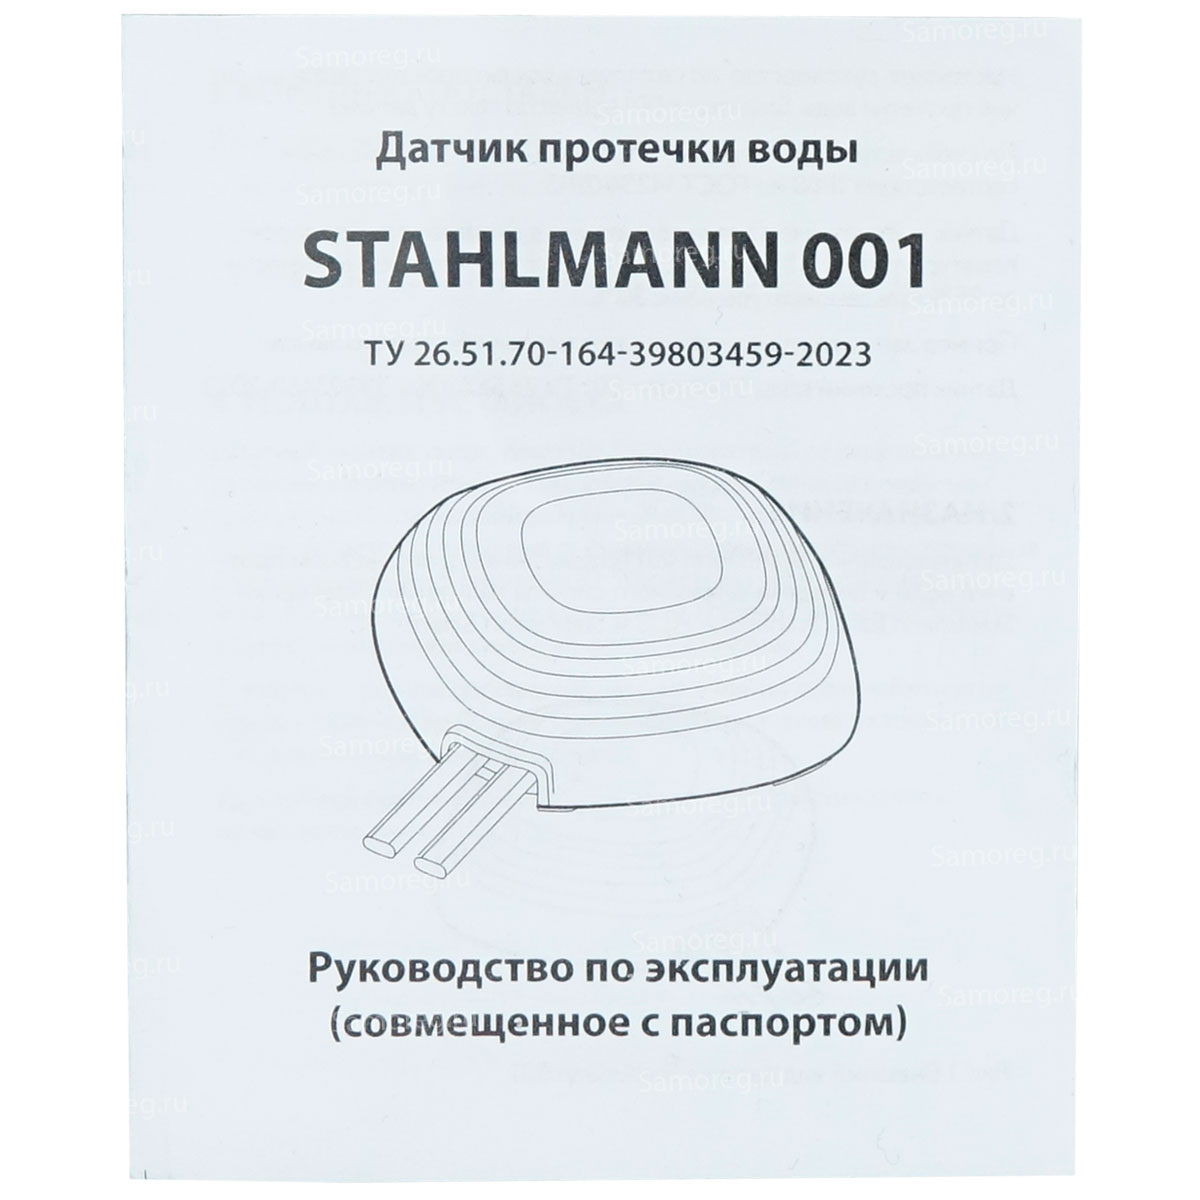 Датчик протечки воды STAHLMANN 001 2282757 (3,3-12 В, IP68)